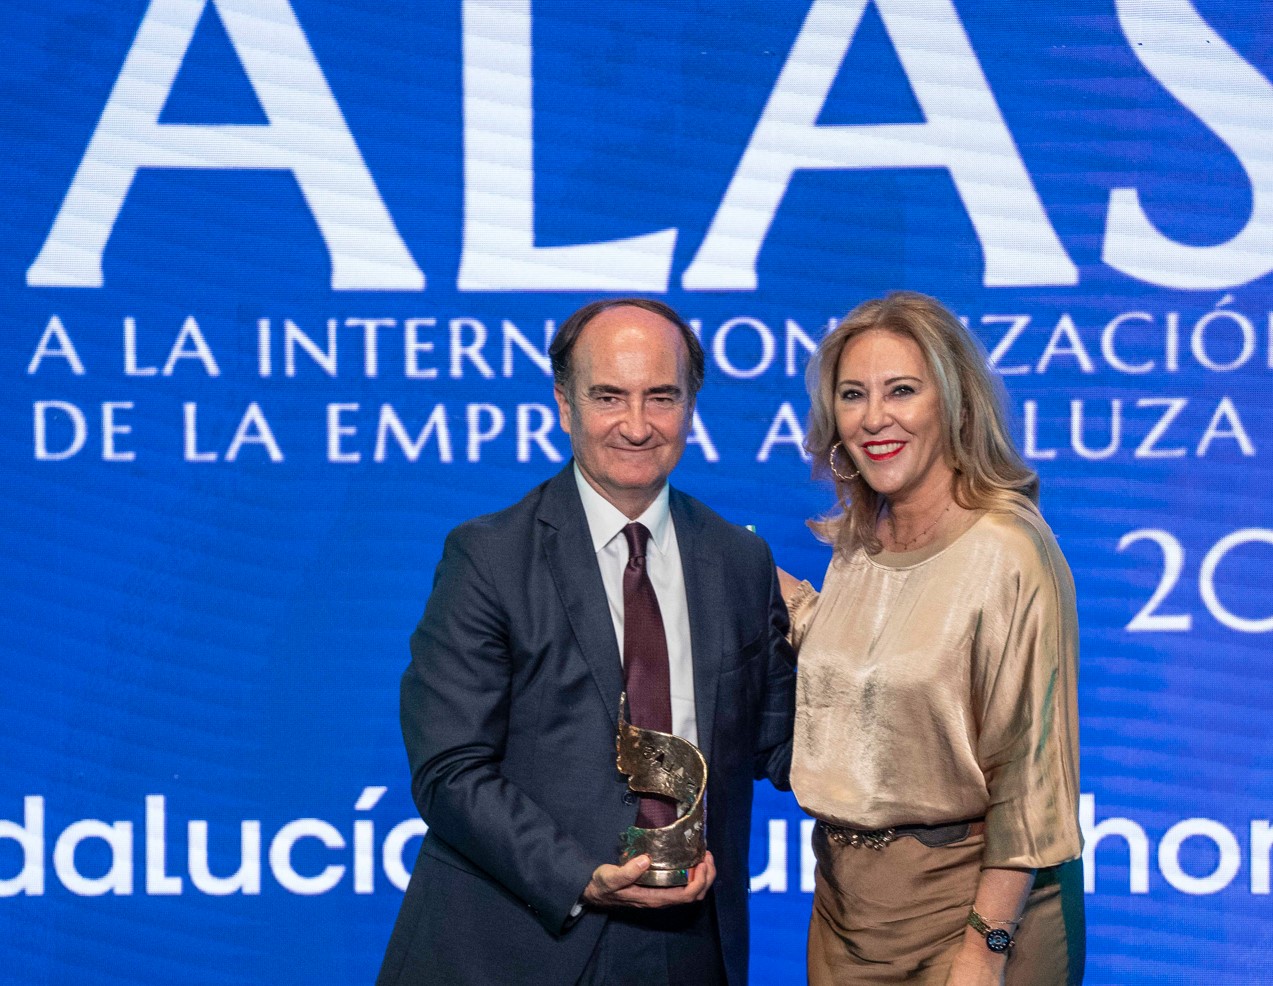 AUTORIDAD PORTUARIA BAHÍA DE ALGECIRAS. Premio Alas 2023 Trayectoria Internacional Entidad